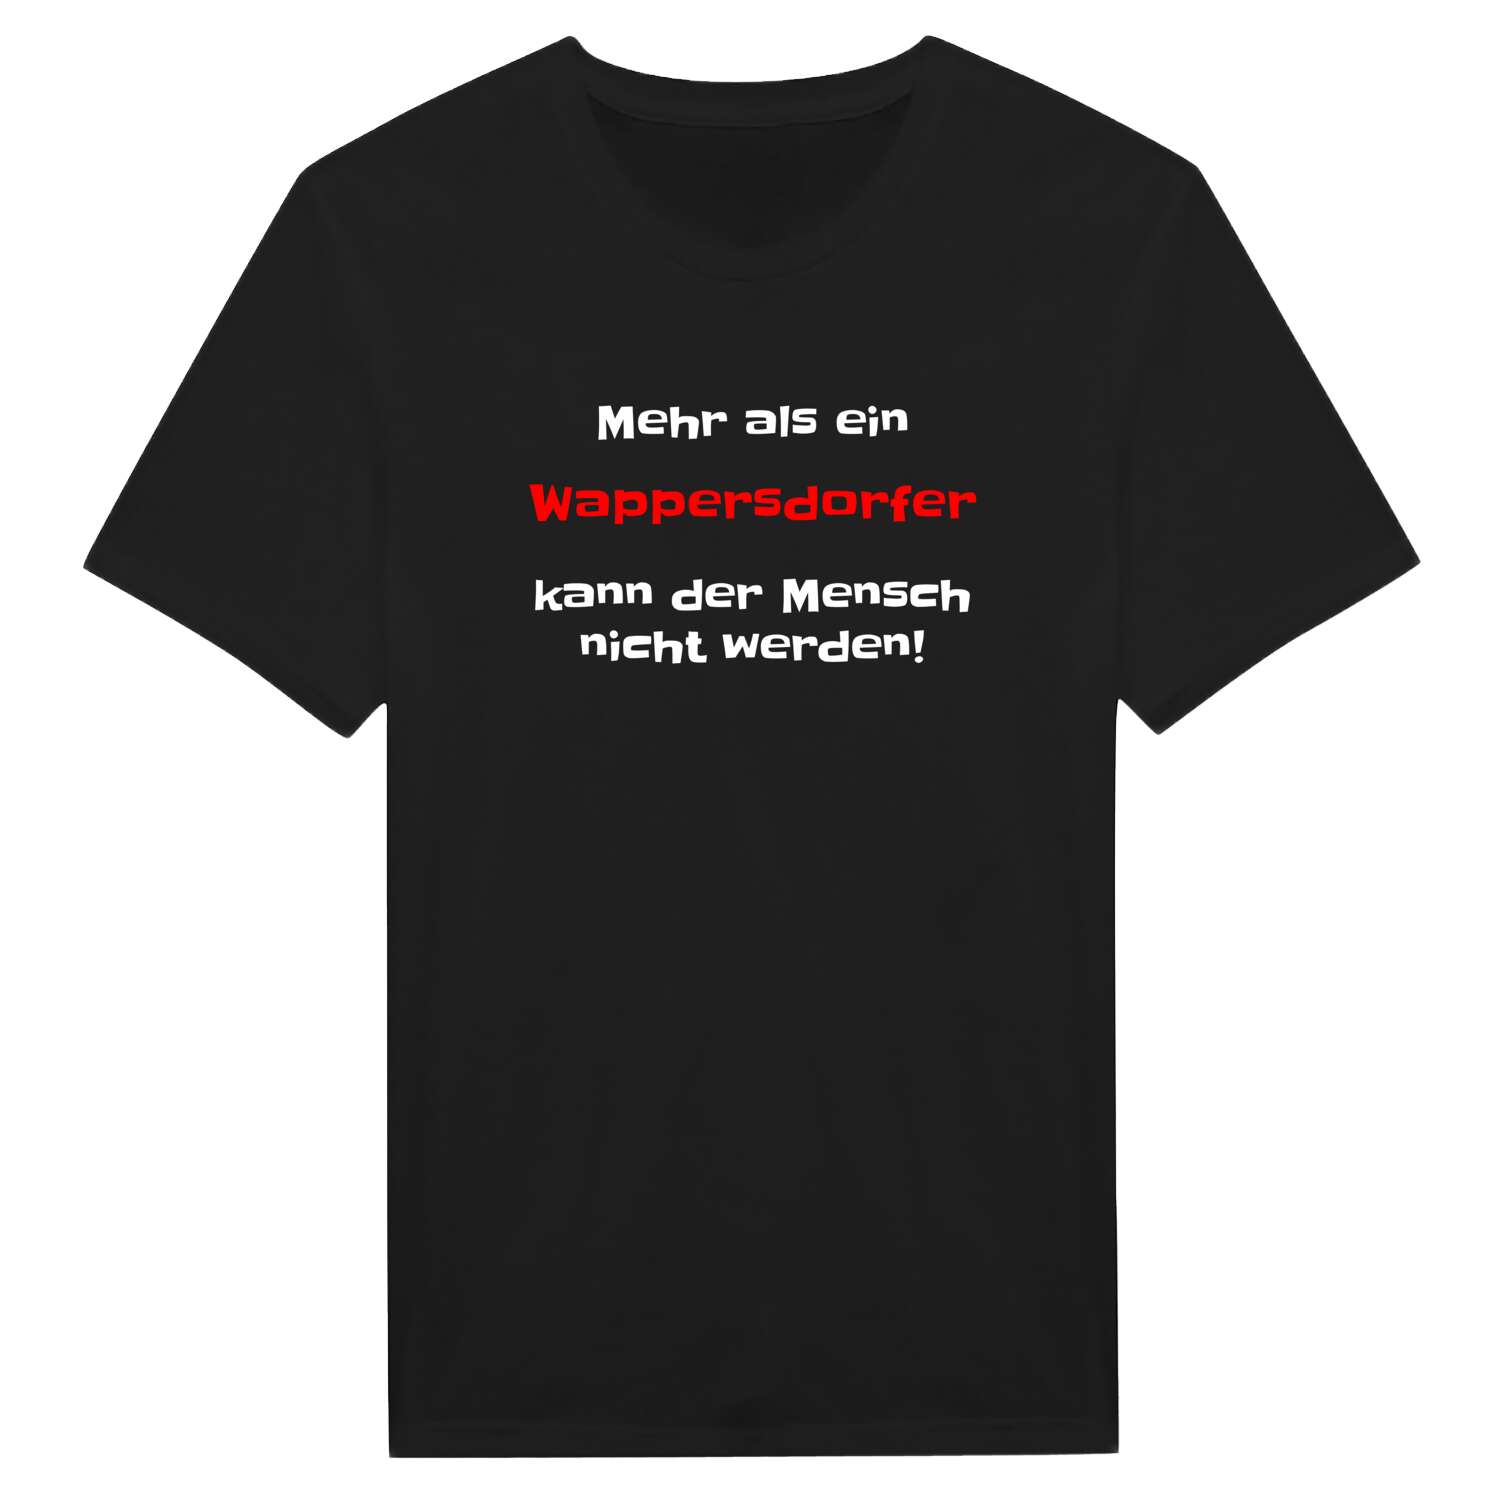 Wappersdorf T-Shirt »Mehr als ein«